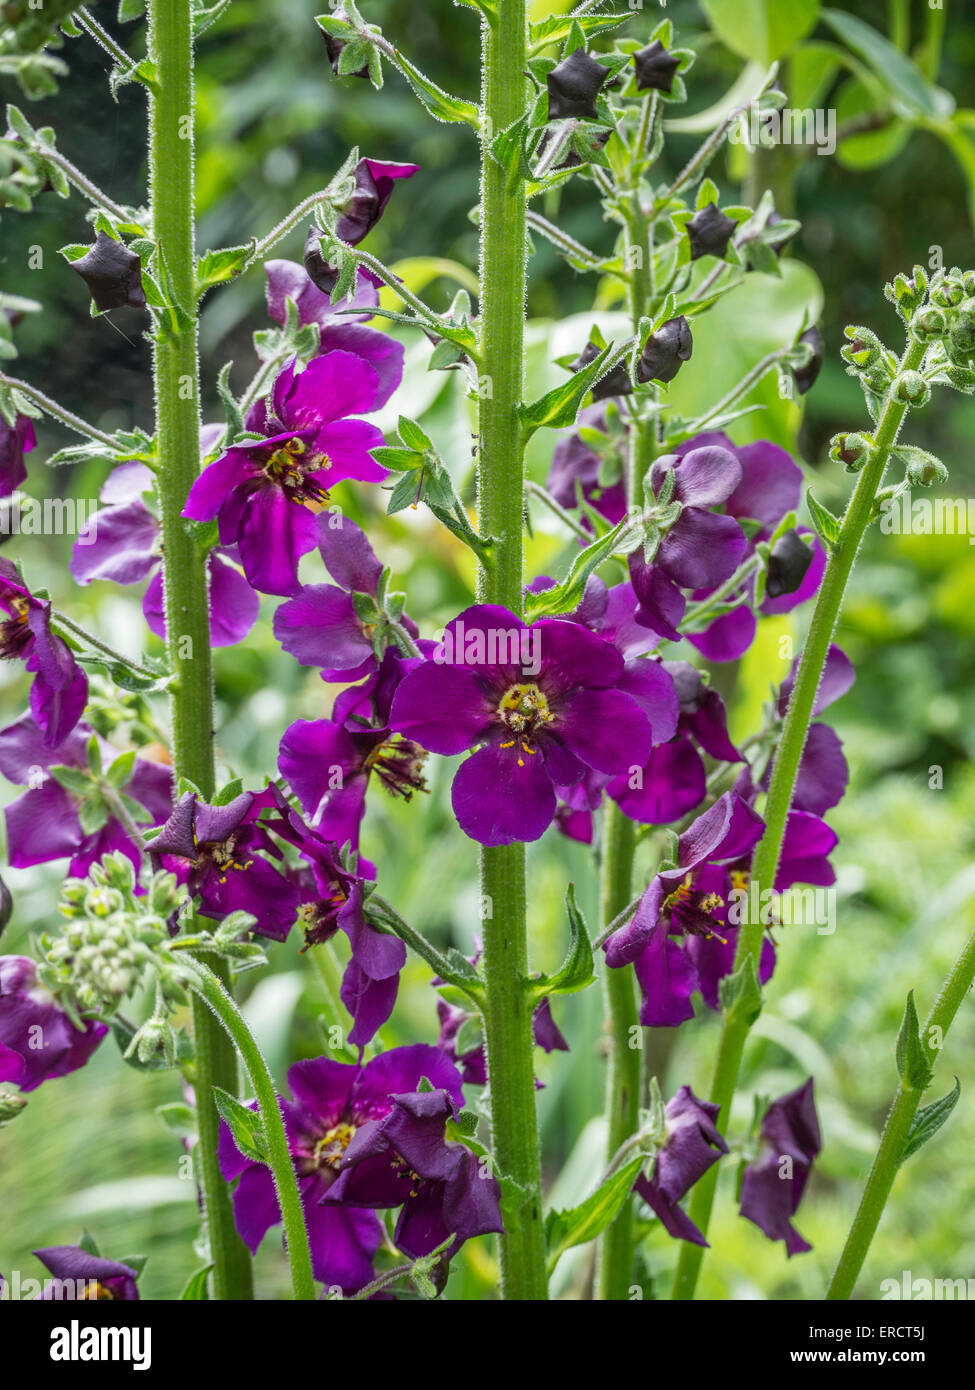 Verbascum phoenicum 'Violetta' flowers Stock Photo